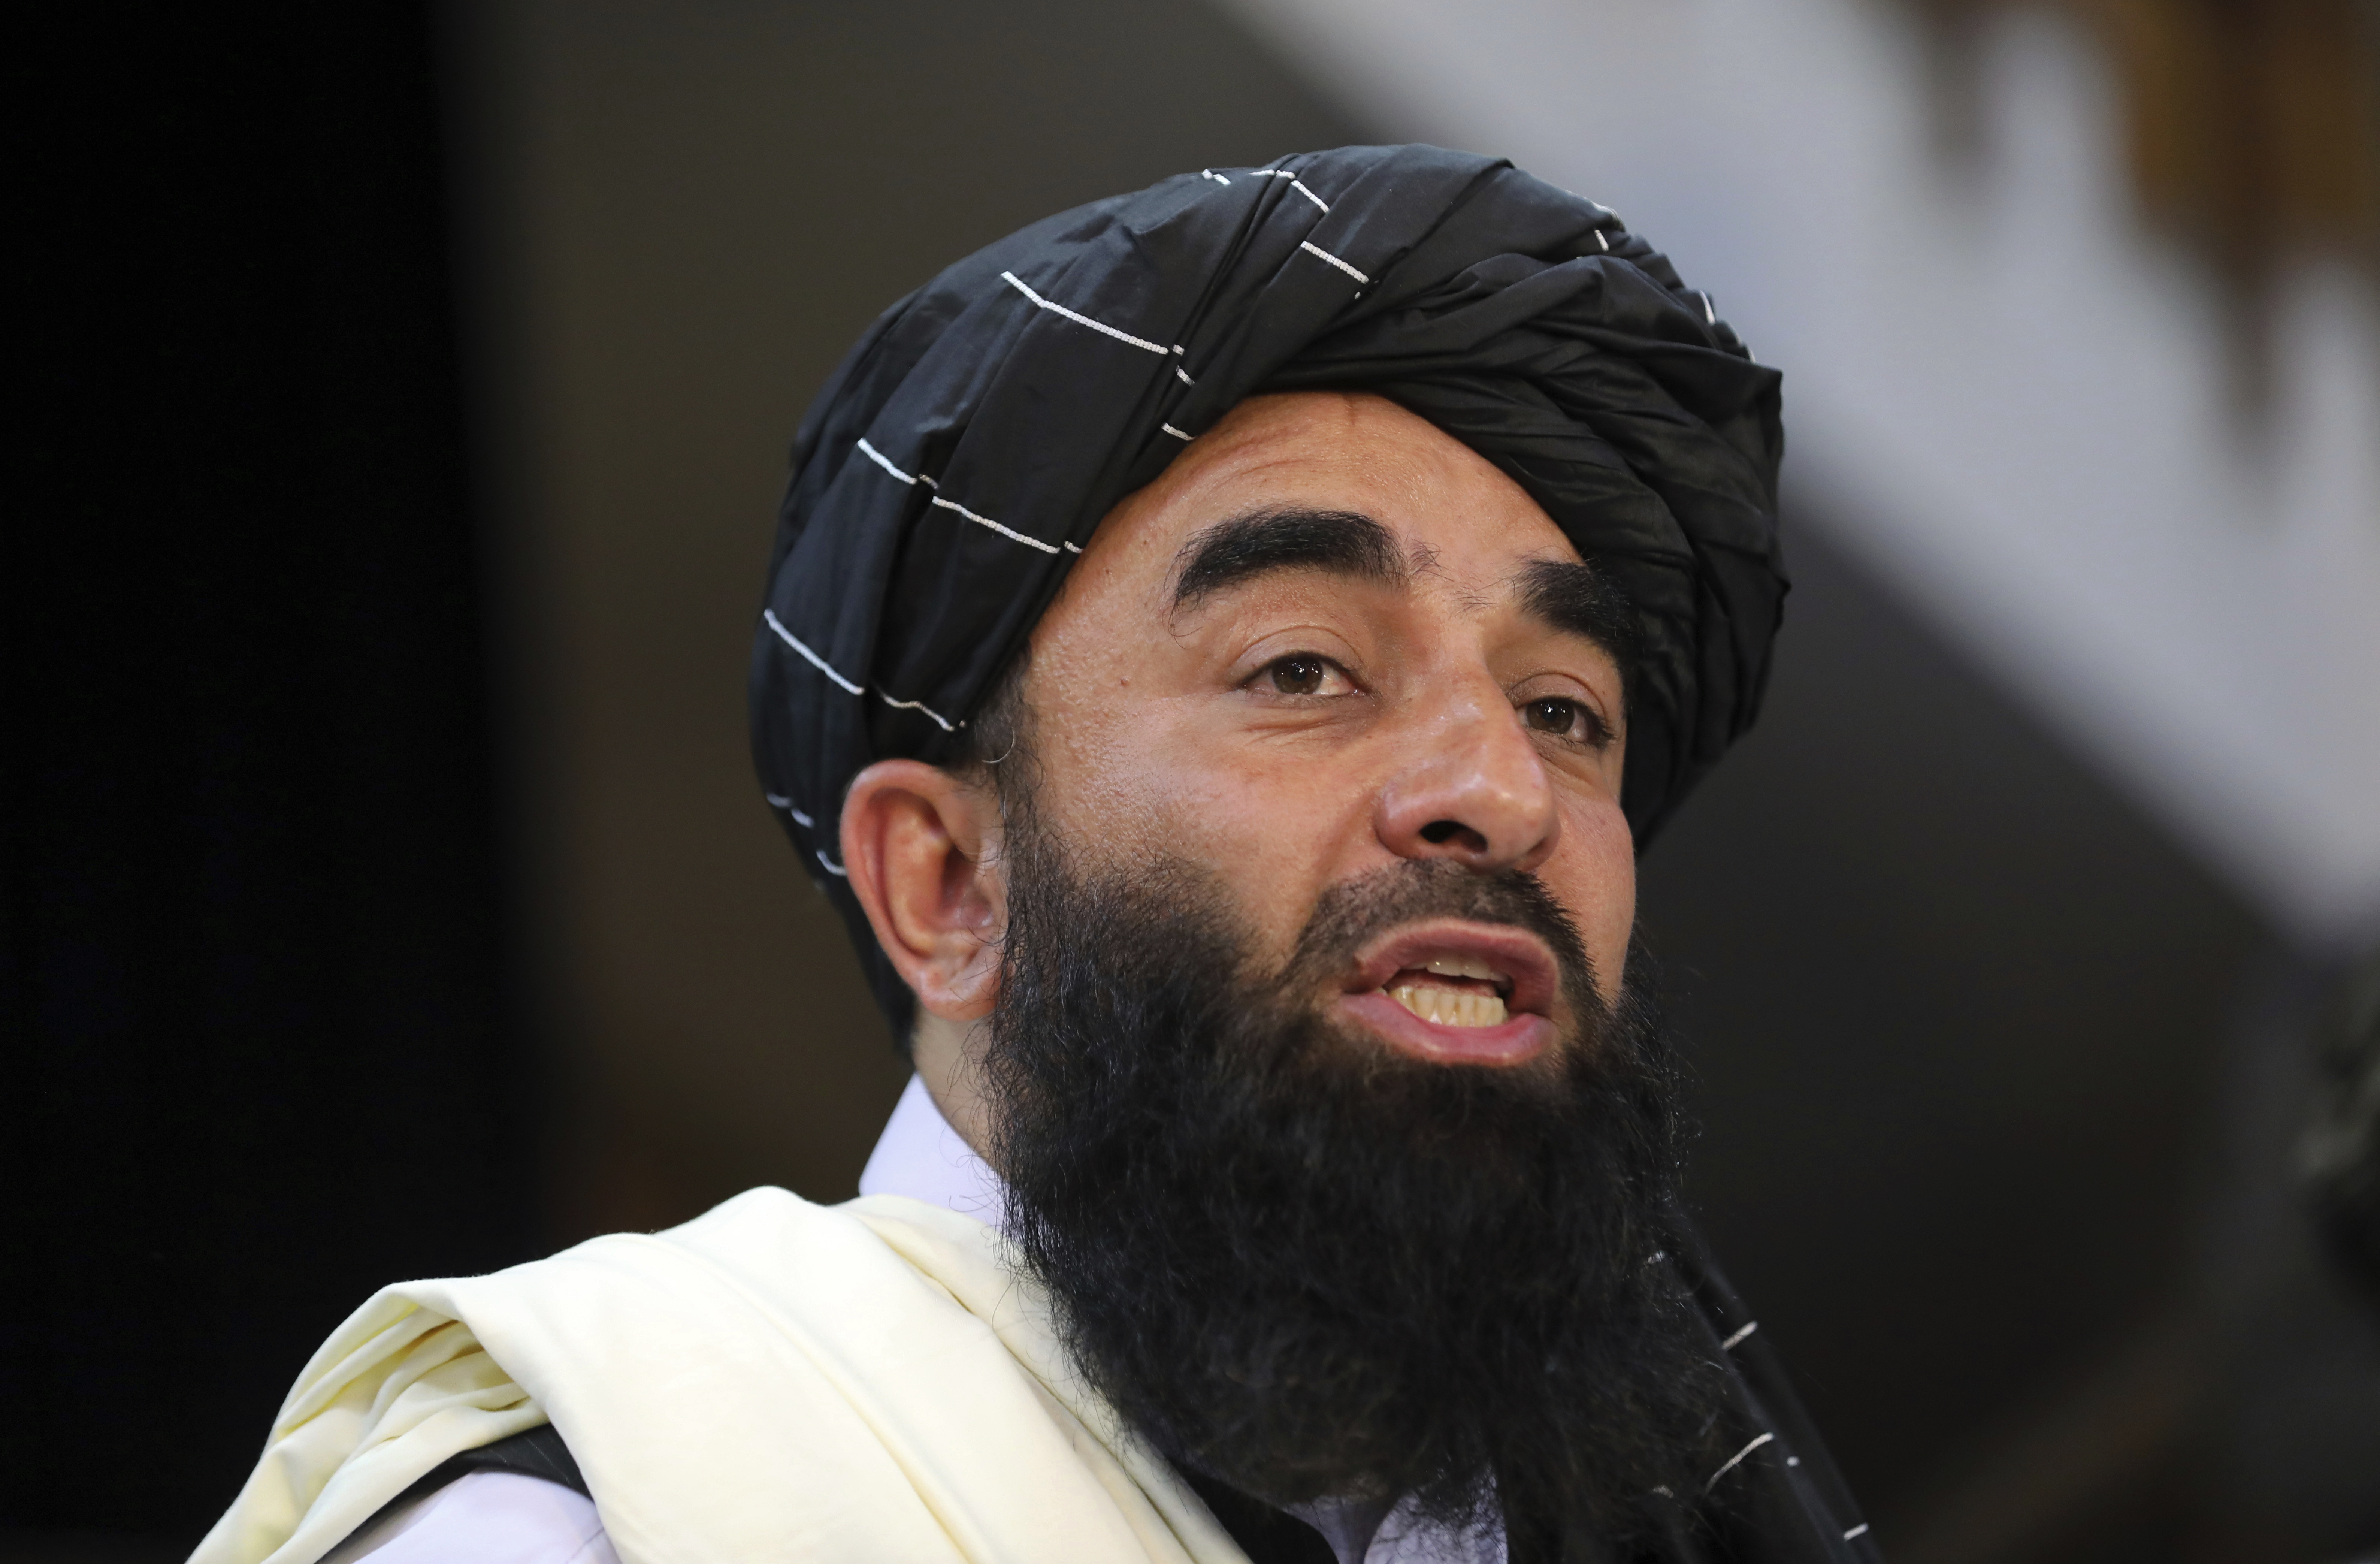 Taliban-talsmann Zabihullah Mujahid mener det var feil av USA å forsøke å stanse IS med et «tilfeldig angrep» som førte til at sivile ble drept. Foto: Rahmat Gul / AP / NTB